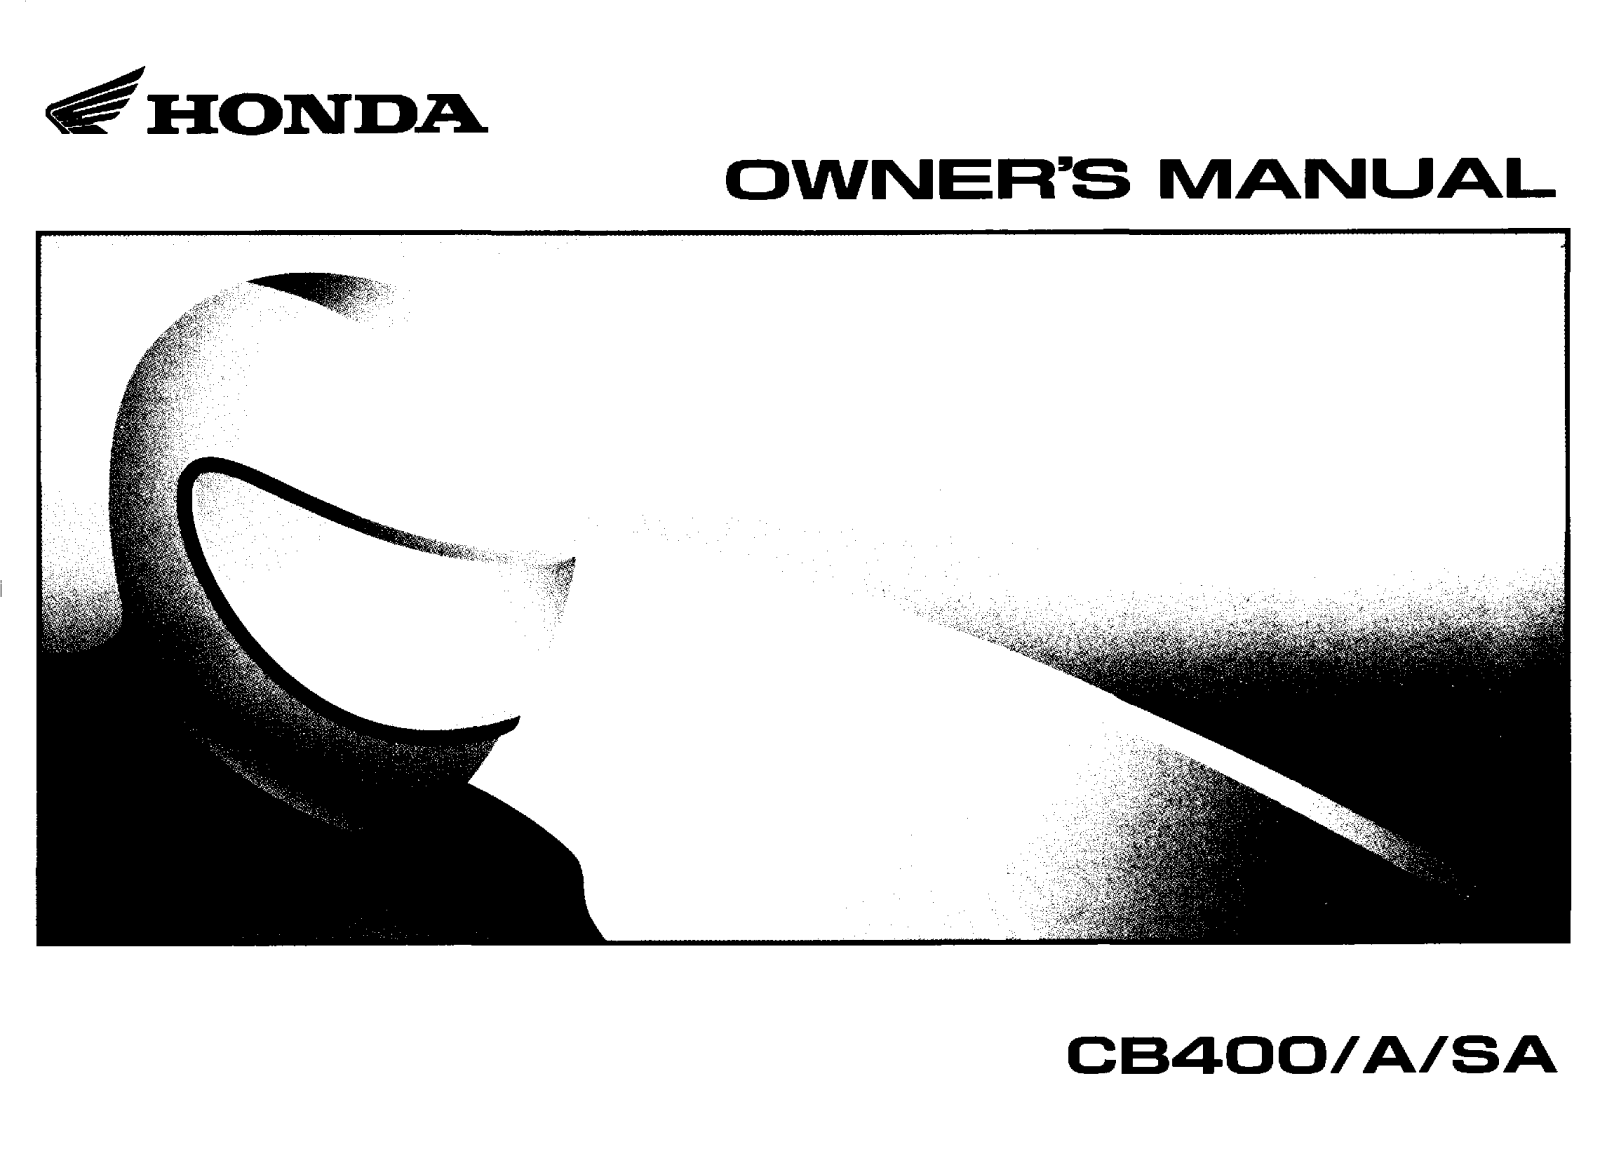 Honda CB400, CB400A, CB400SA Owner's Manual